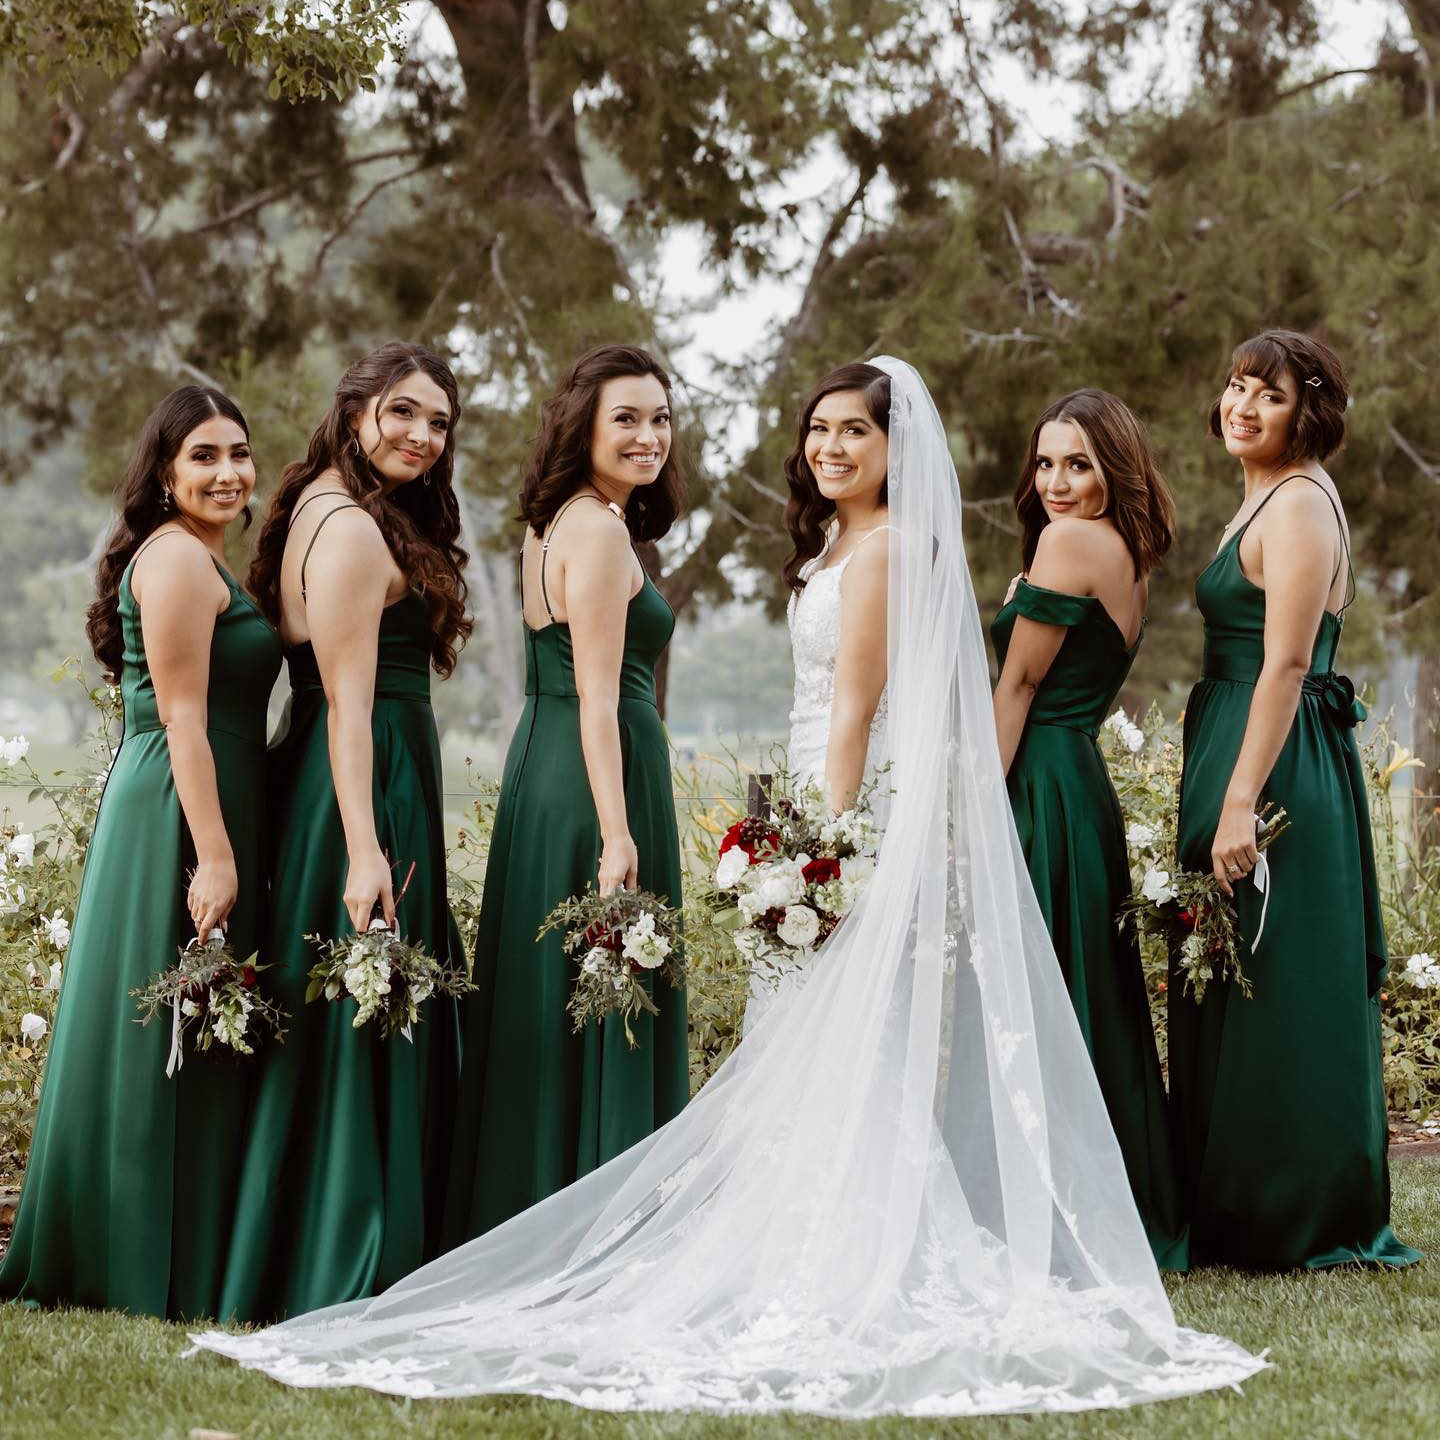 bride and bridesmaid wearing green bridesmaid dresses